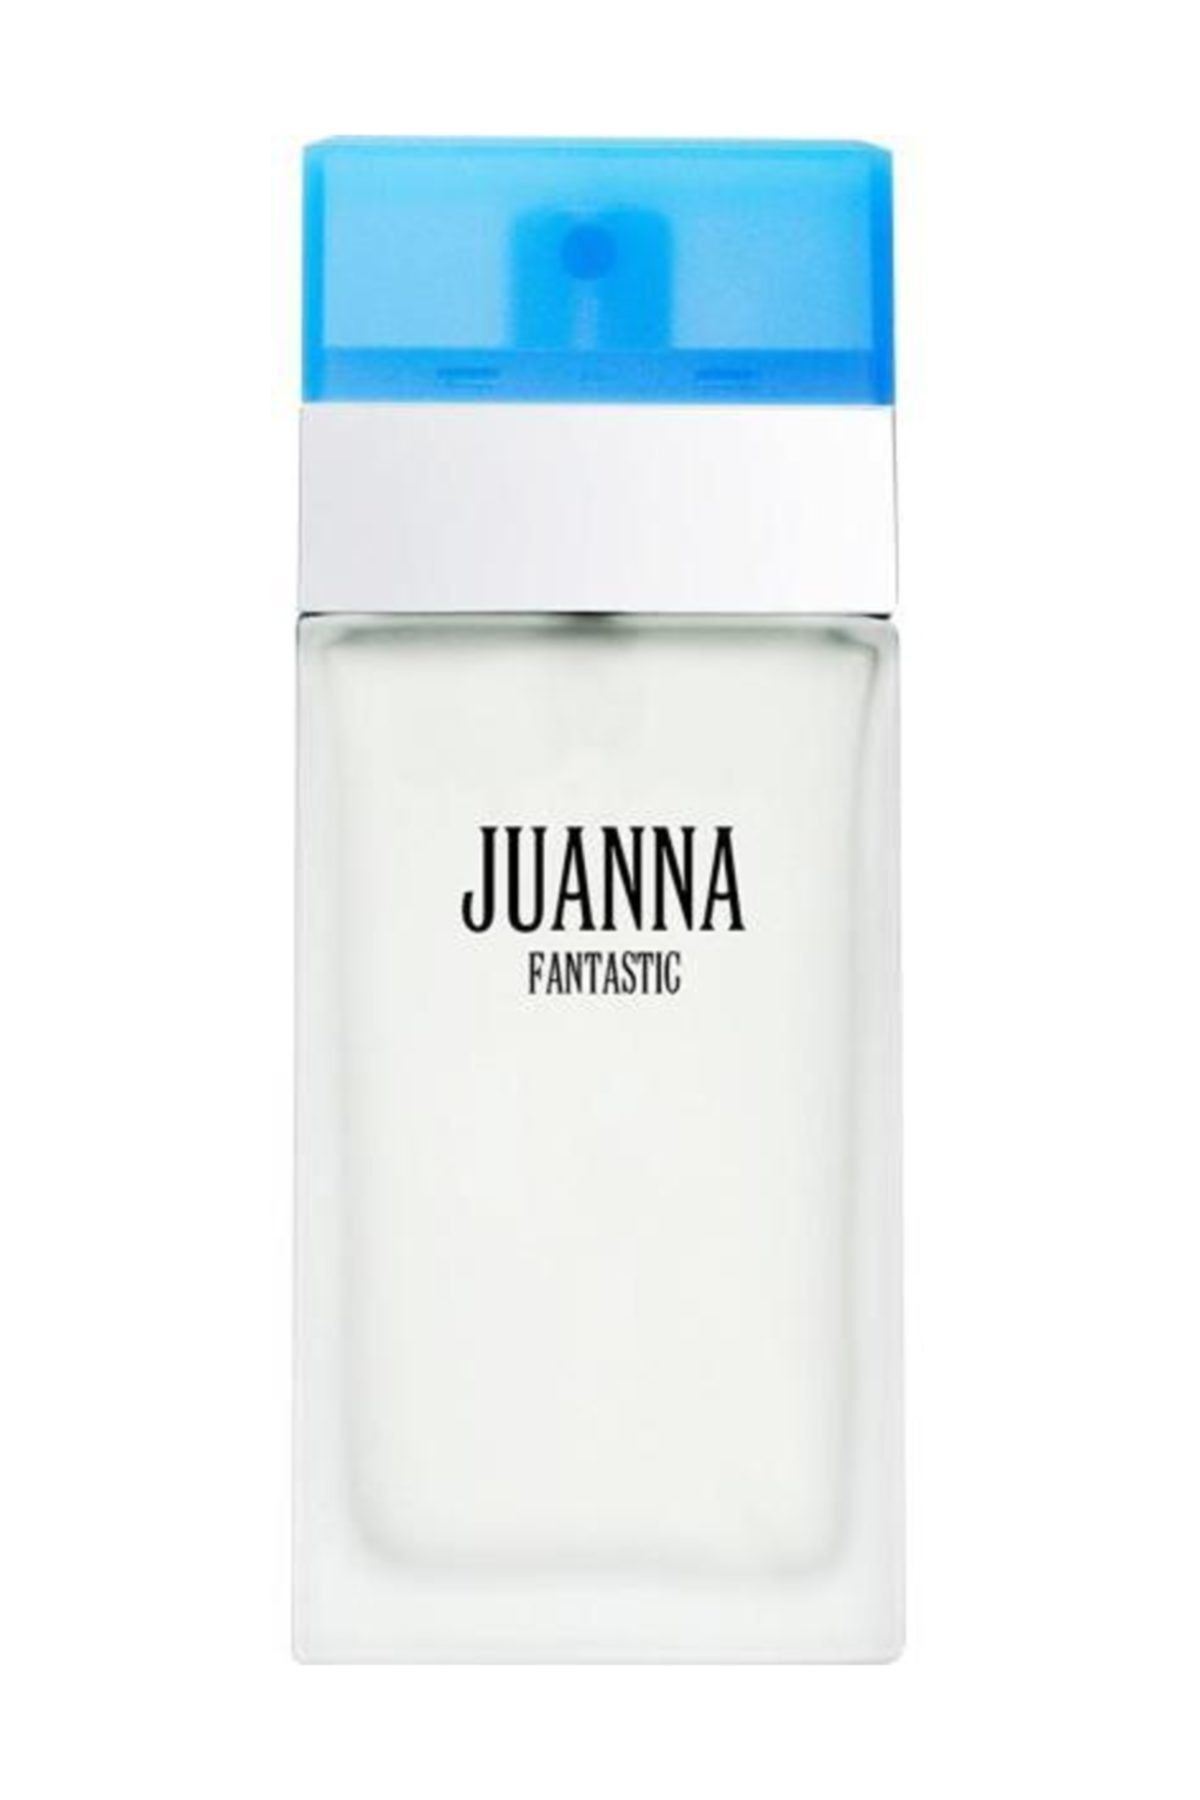 Silva Juanna 100 Cc Parfüm Fantastıc